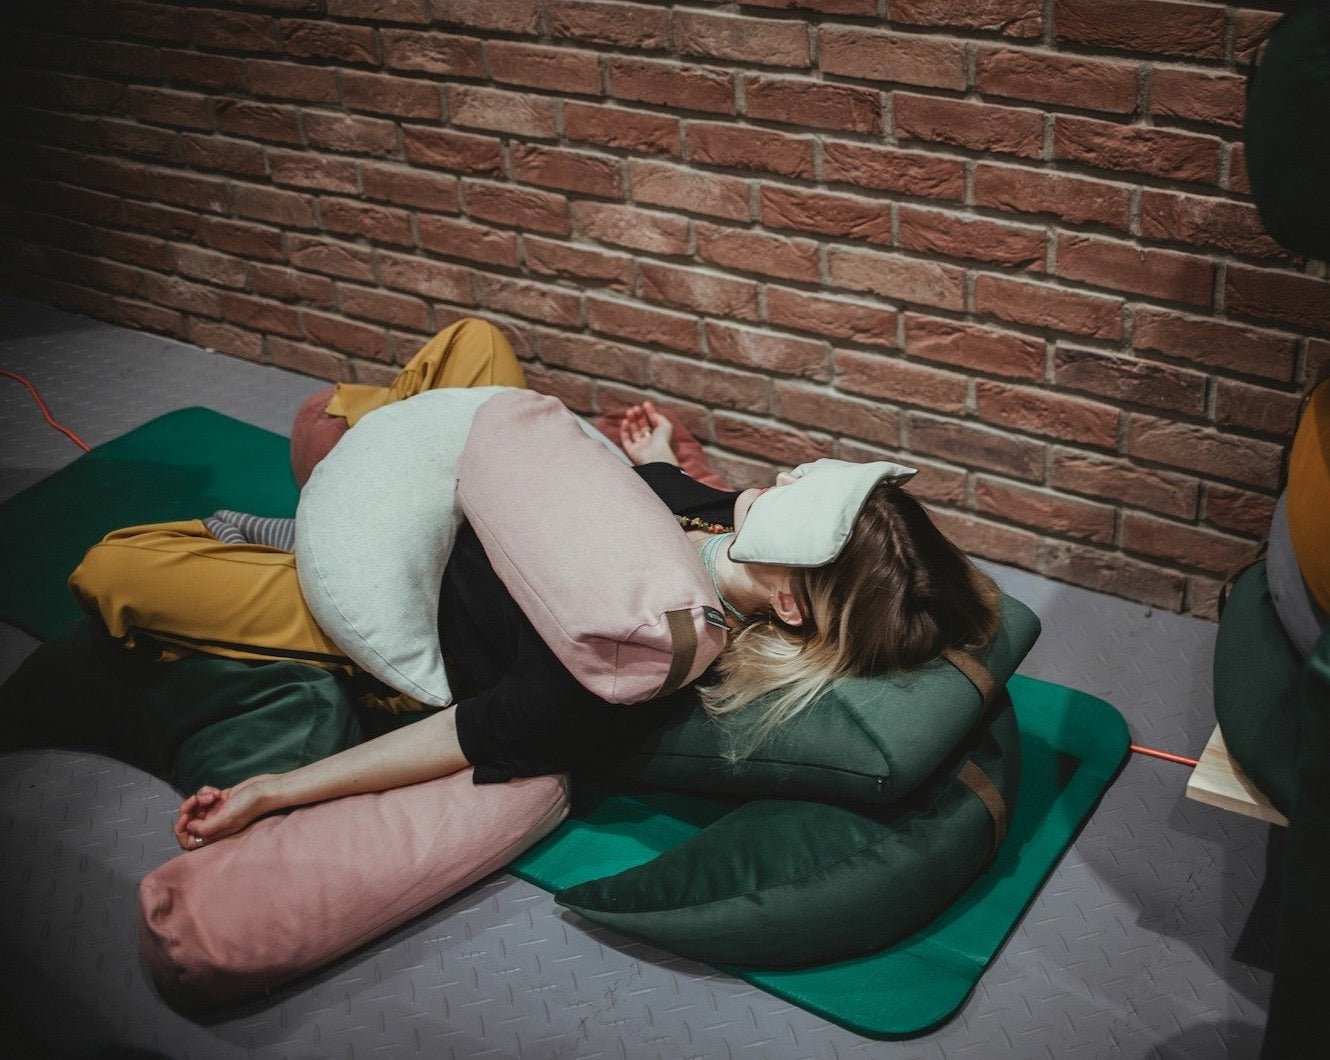 kobieta praktykująca relaksację leżąc na macie używając poduszek gryczanych jako odciążenie o obciążenie ciała